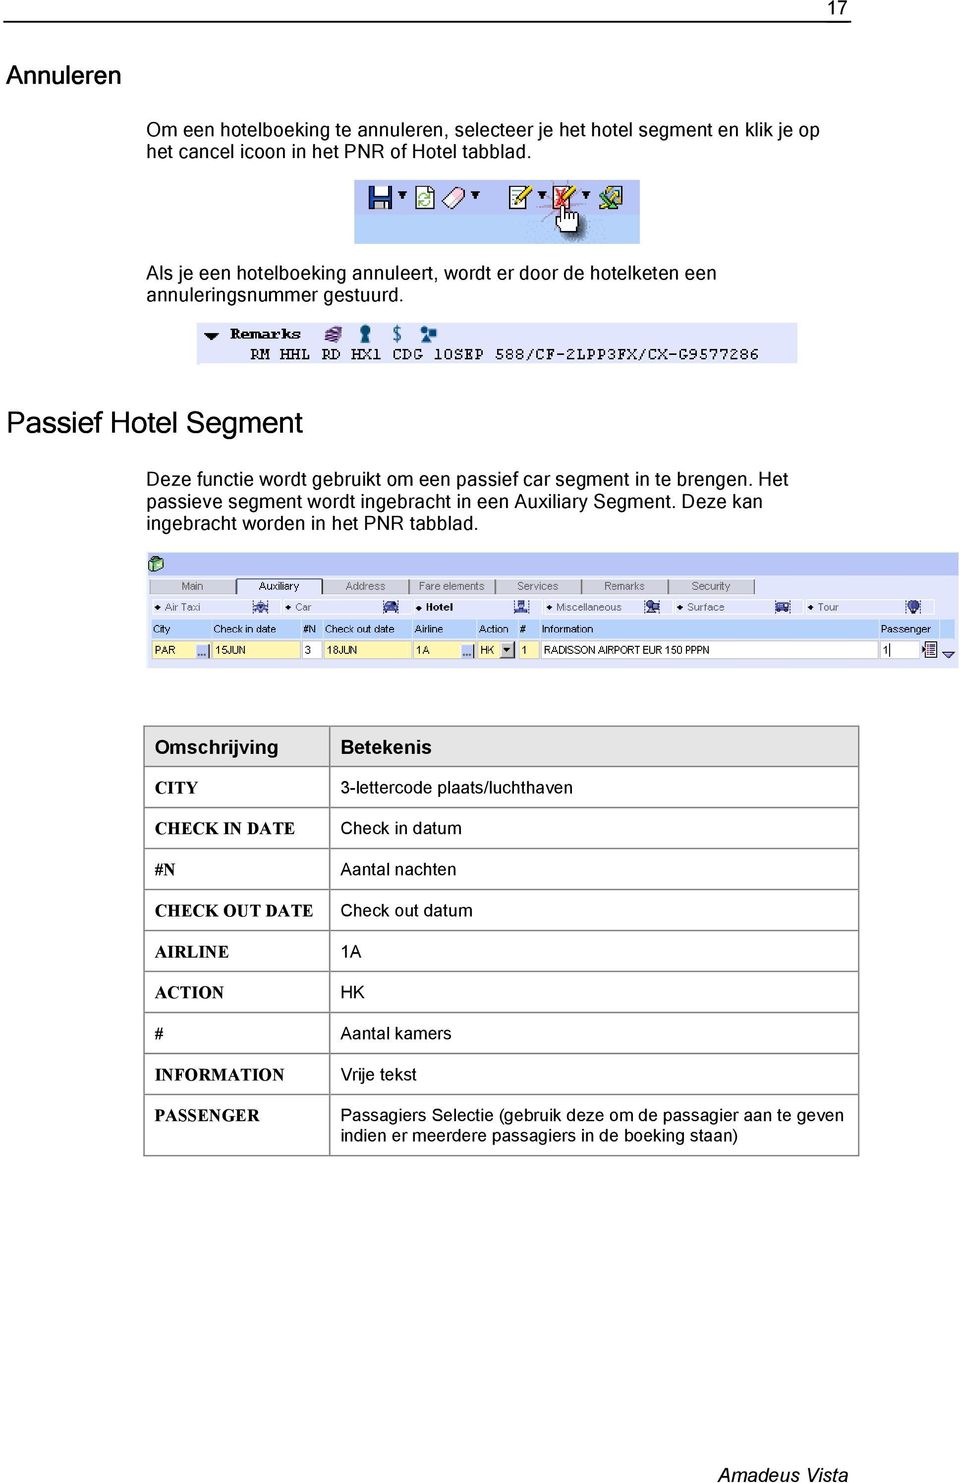 Het passieve segment wordt ingebracht in een Auxiliary Segment. Deze kan ingebracht worden in het PNR tabblad.